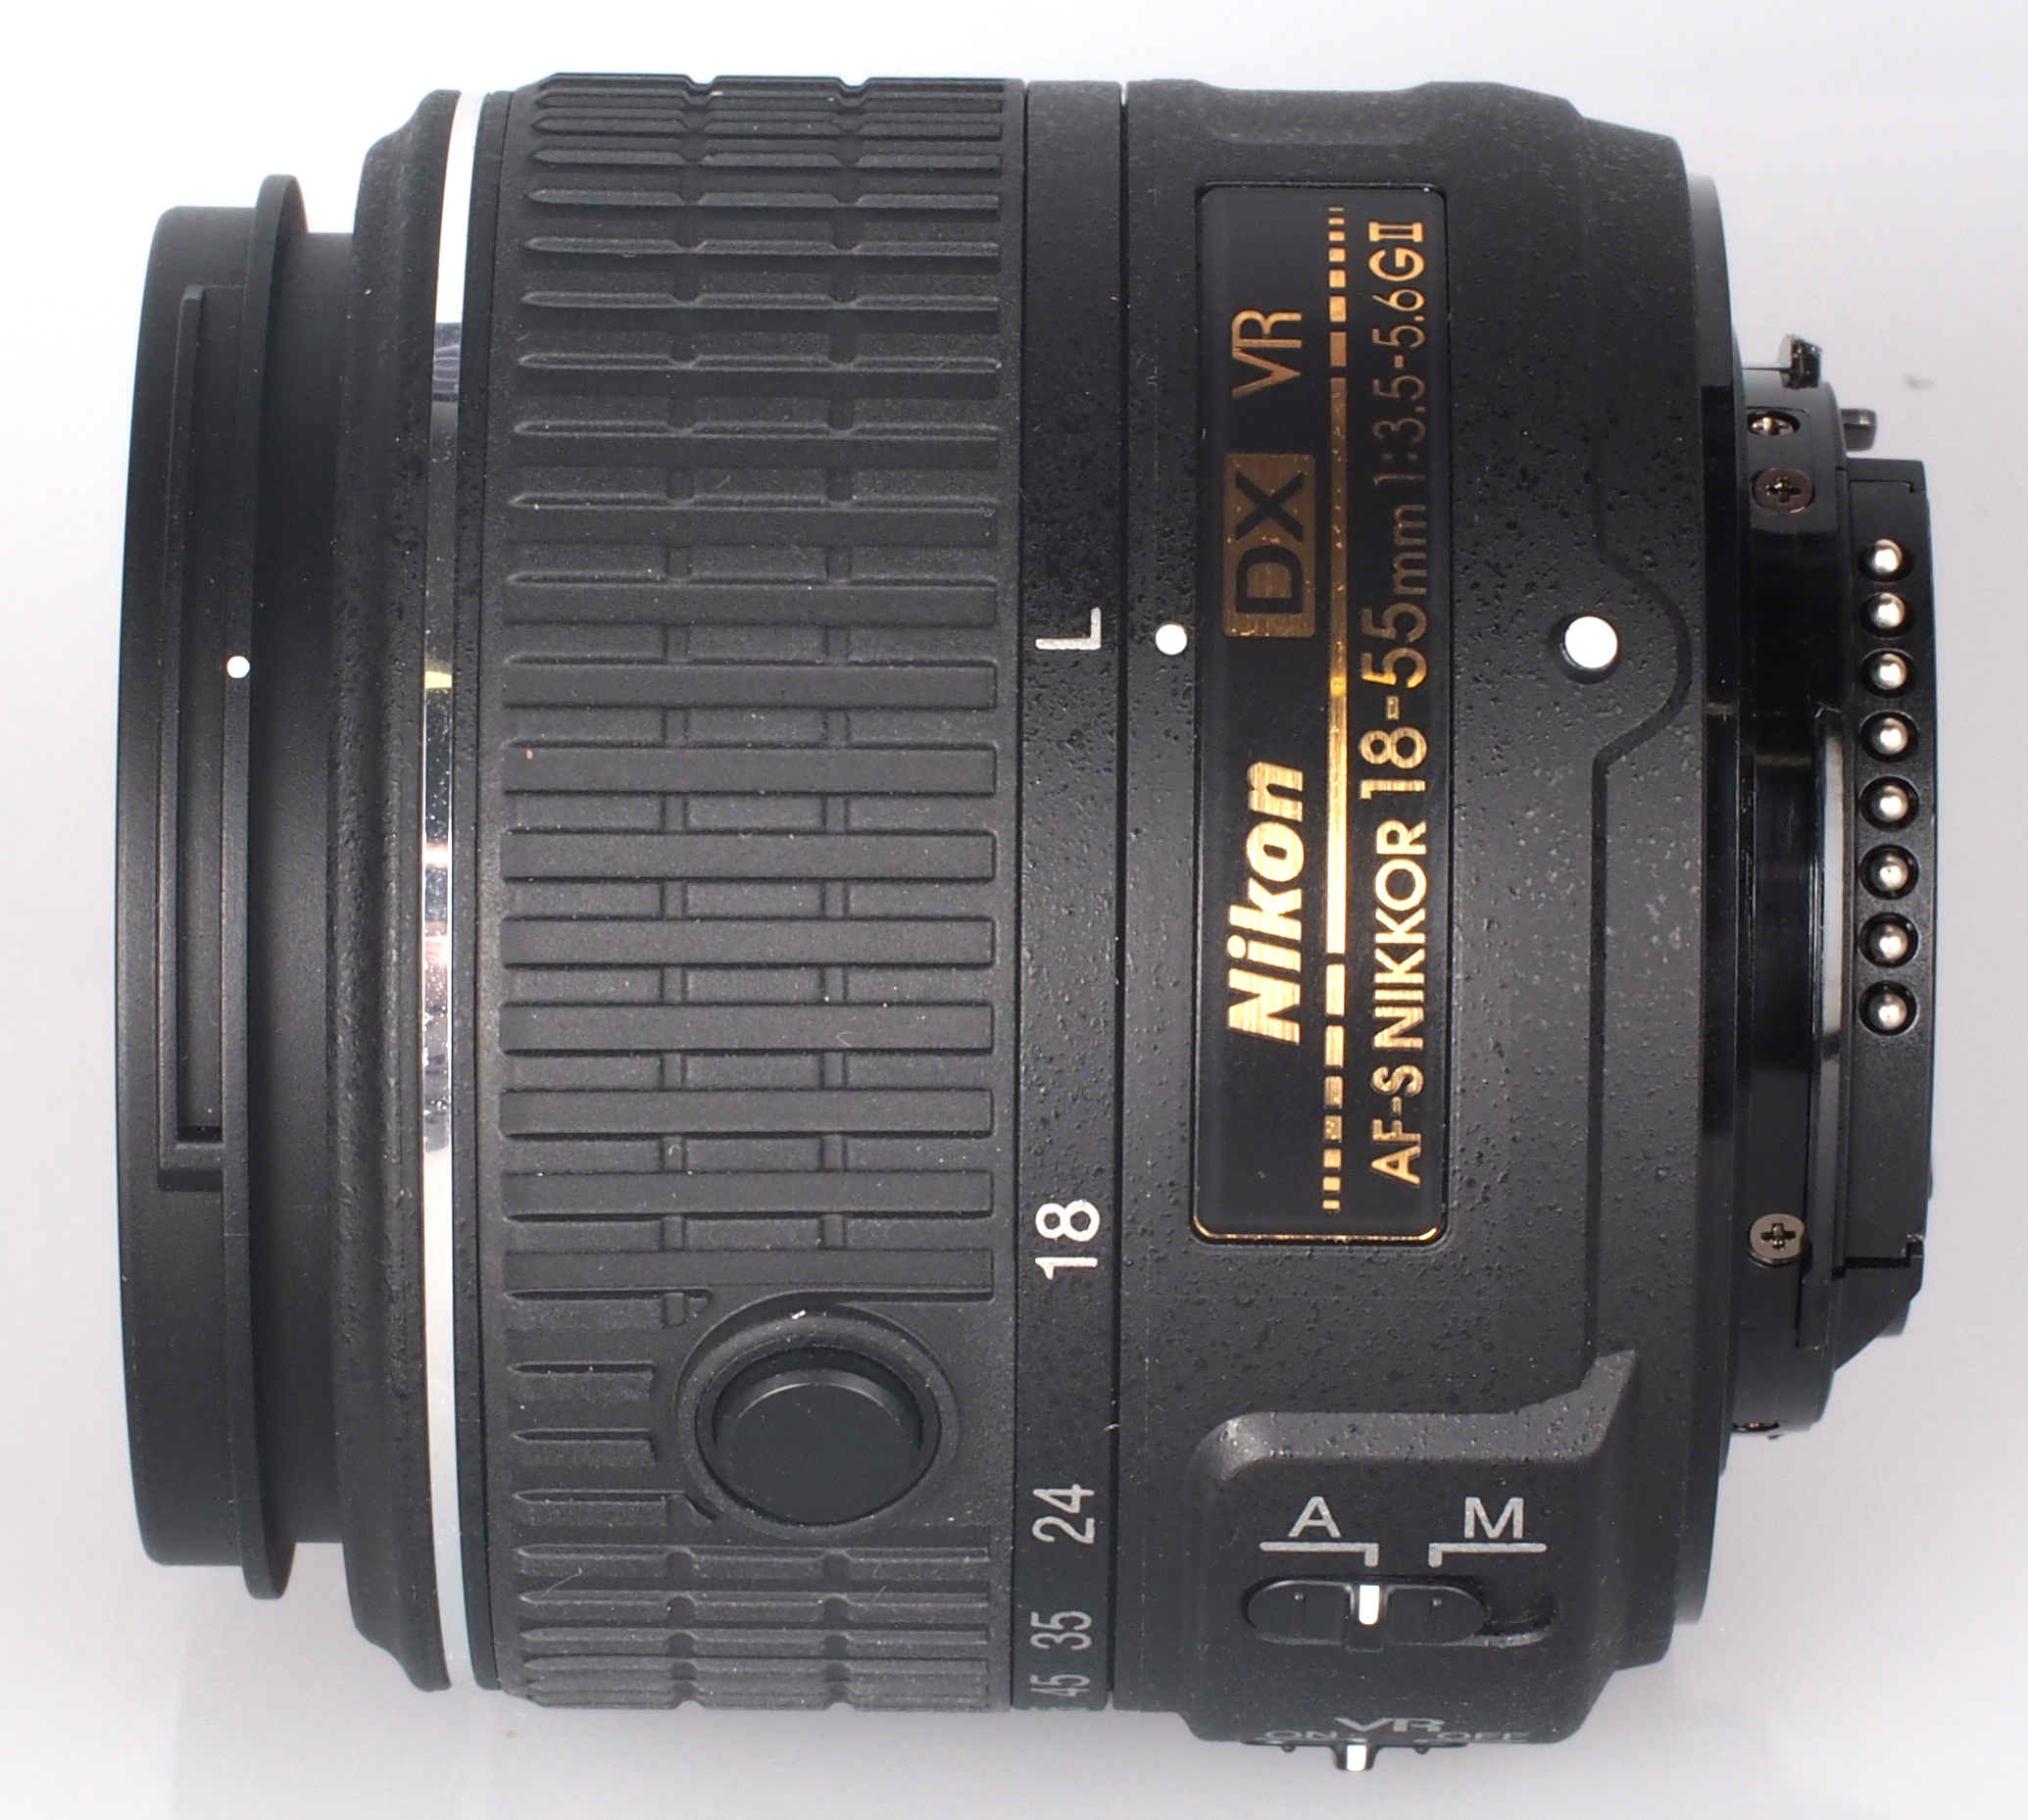 Nikon AF-S DX Nikkor 18?55mm f/3.5?5.6G VR II Lens Review